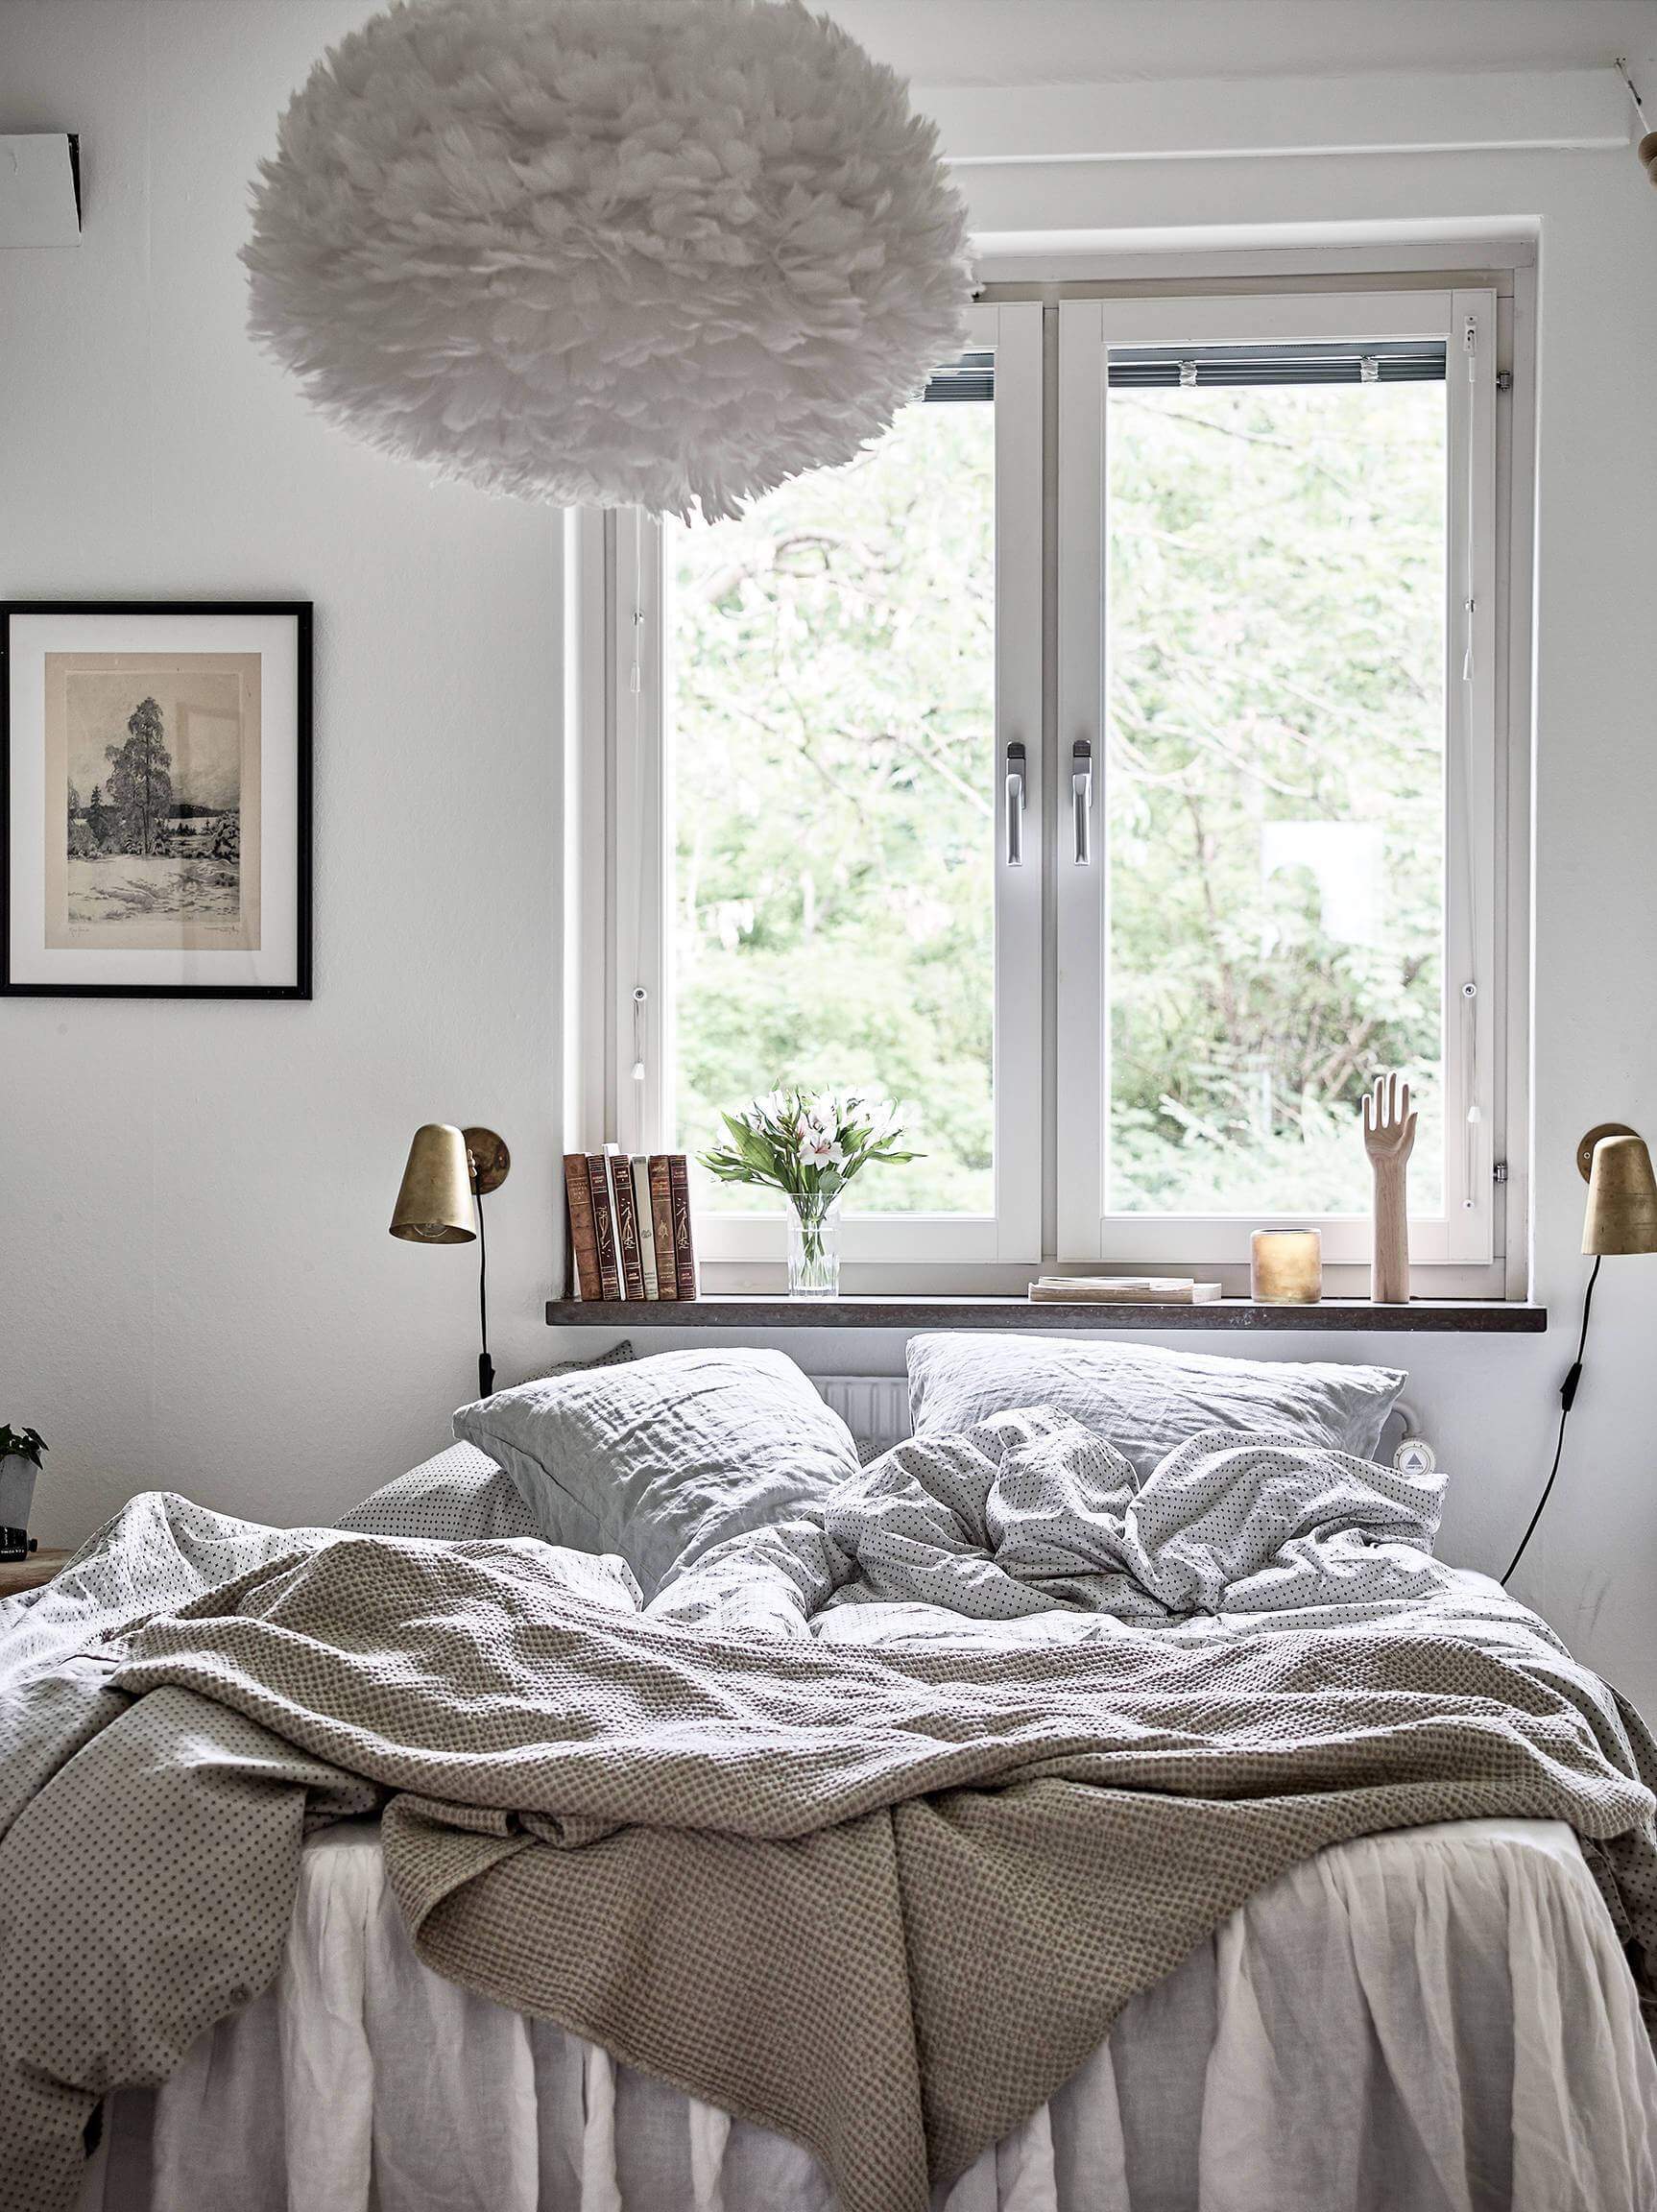 Fotos para Decoração do Quarto - Arrumar a cama ou não? Quarto roupa de cama cinza e branco, quarto com decoração escandinava